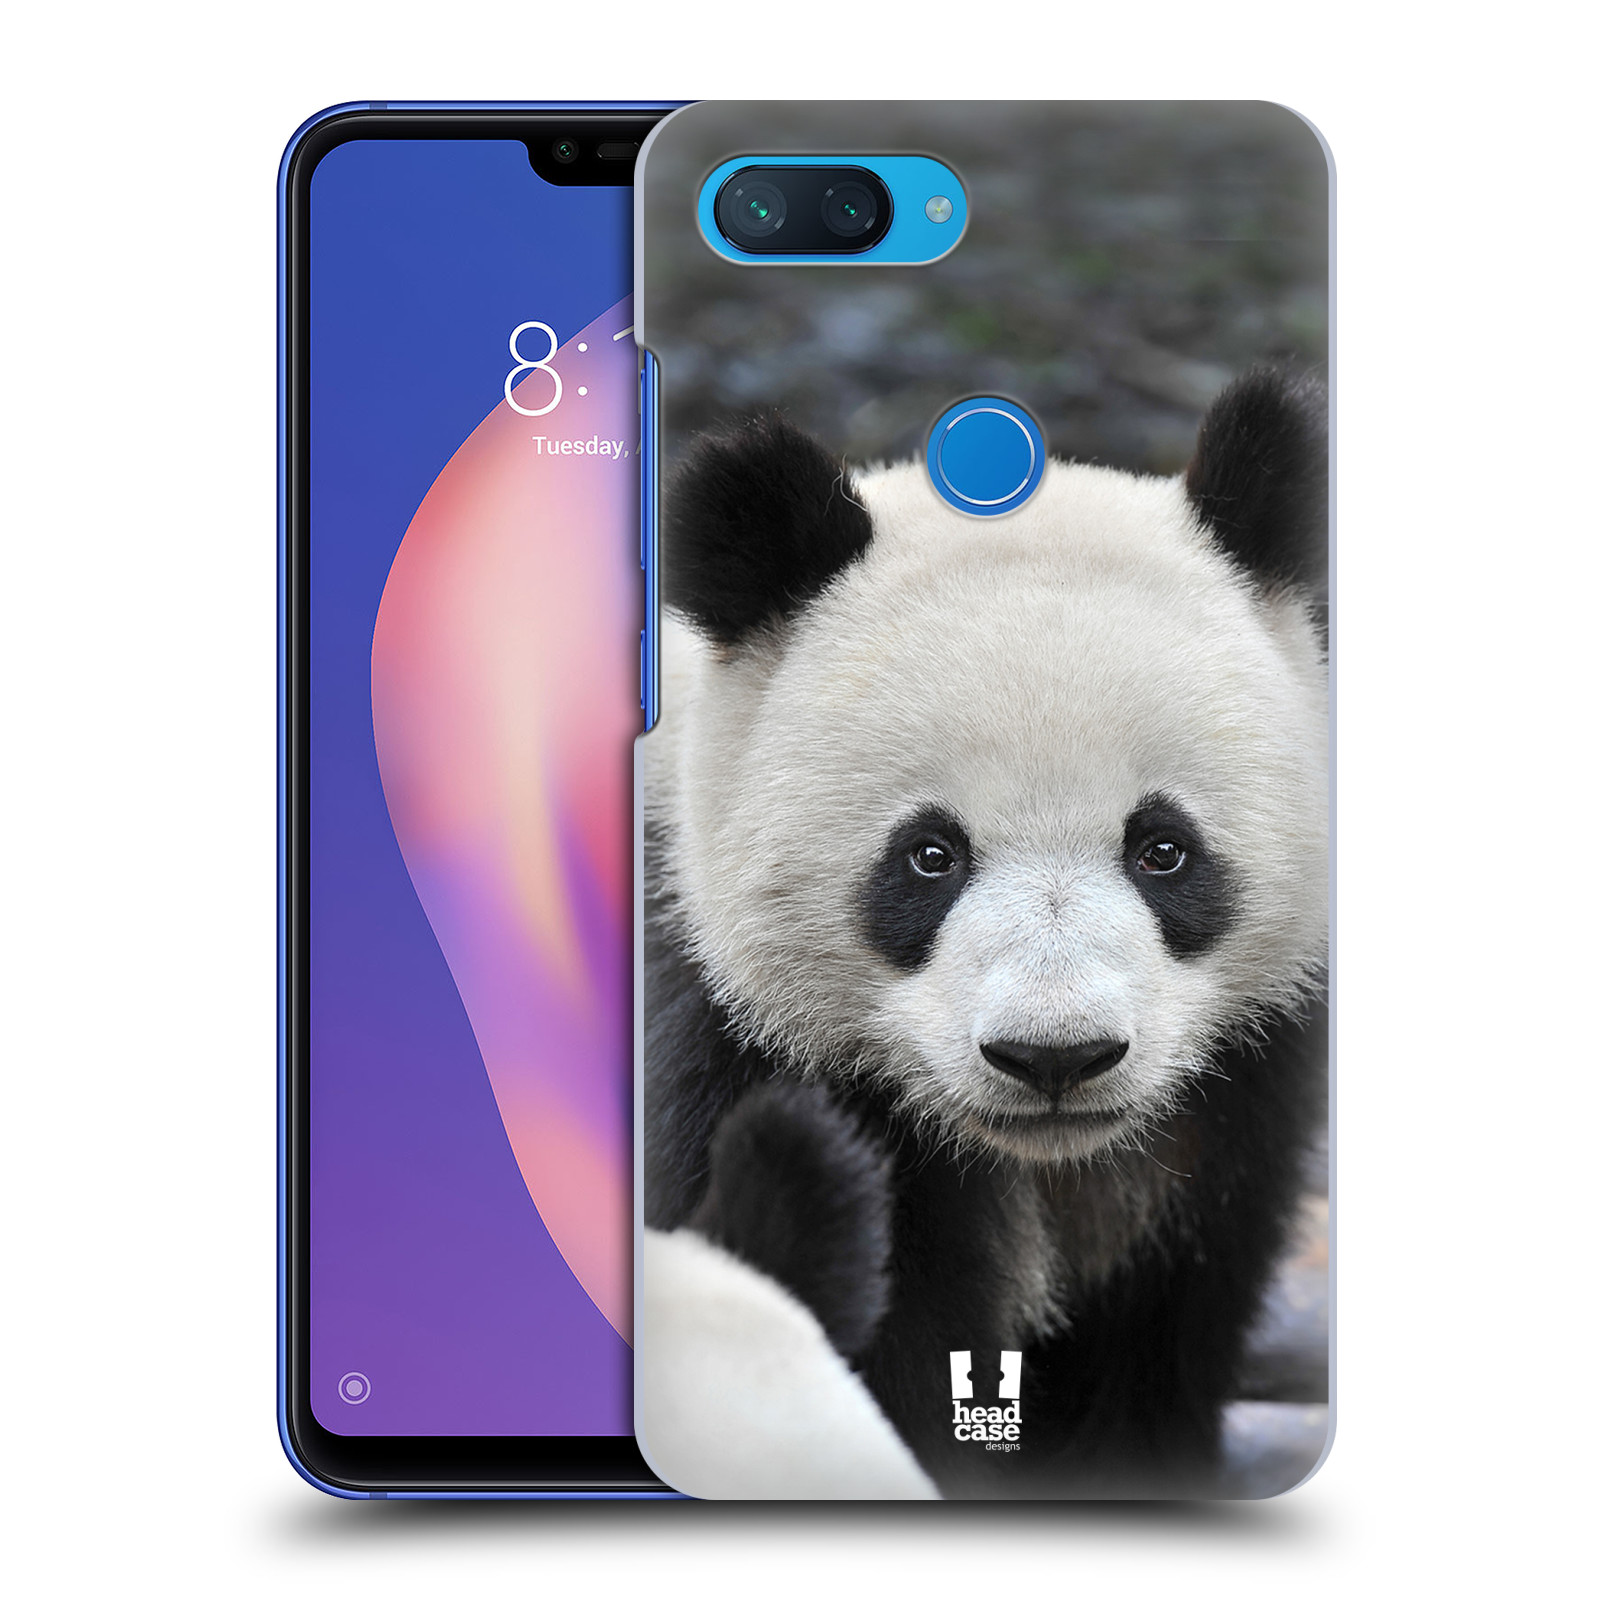 Zadní obal pro mobil Xiaomi Mi 8 LITE - HEAD CASE - Svět zvířat medvěd panda